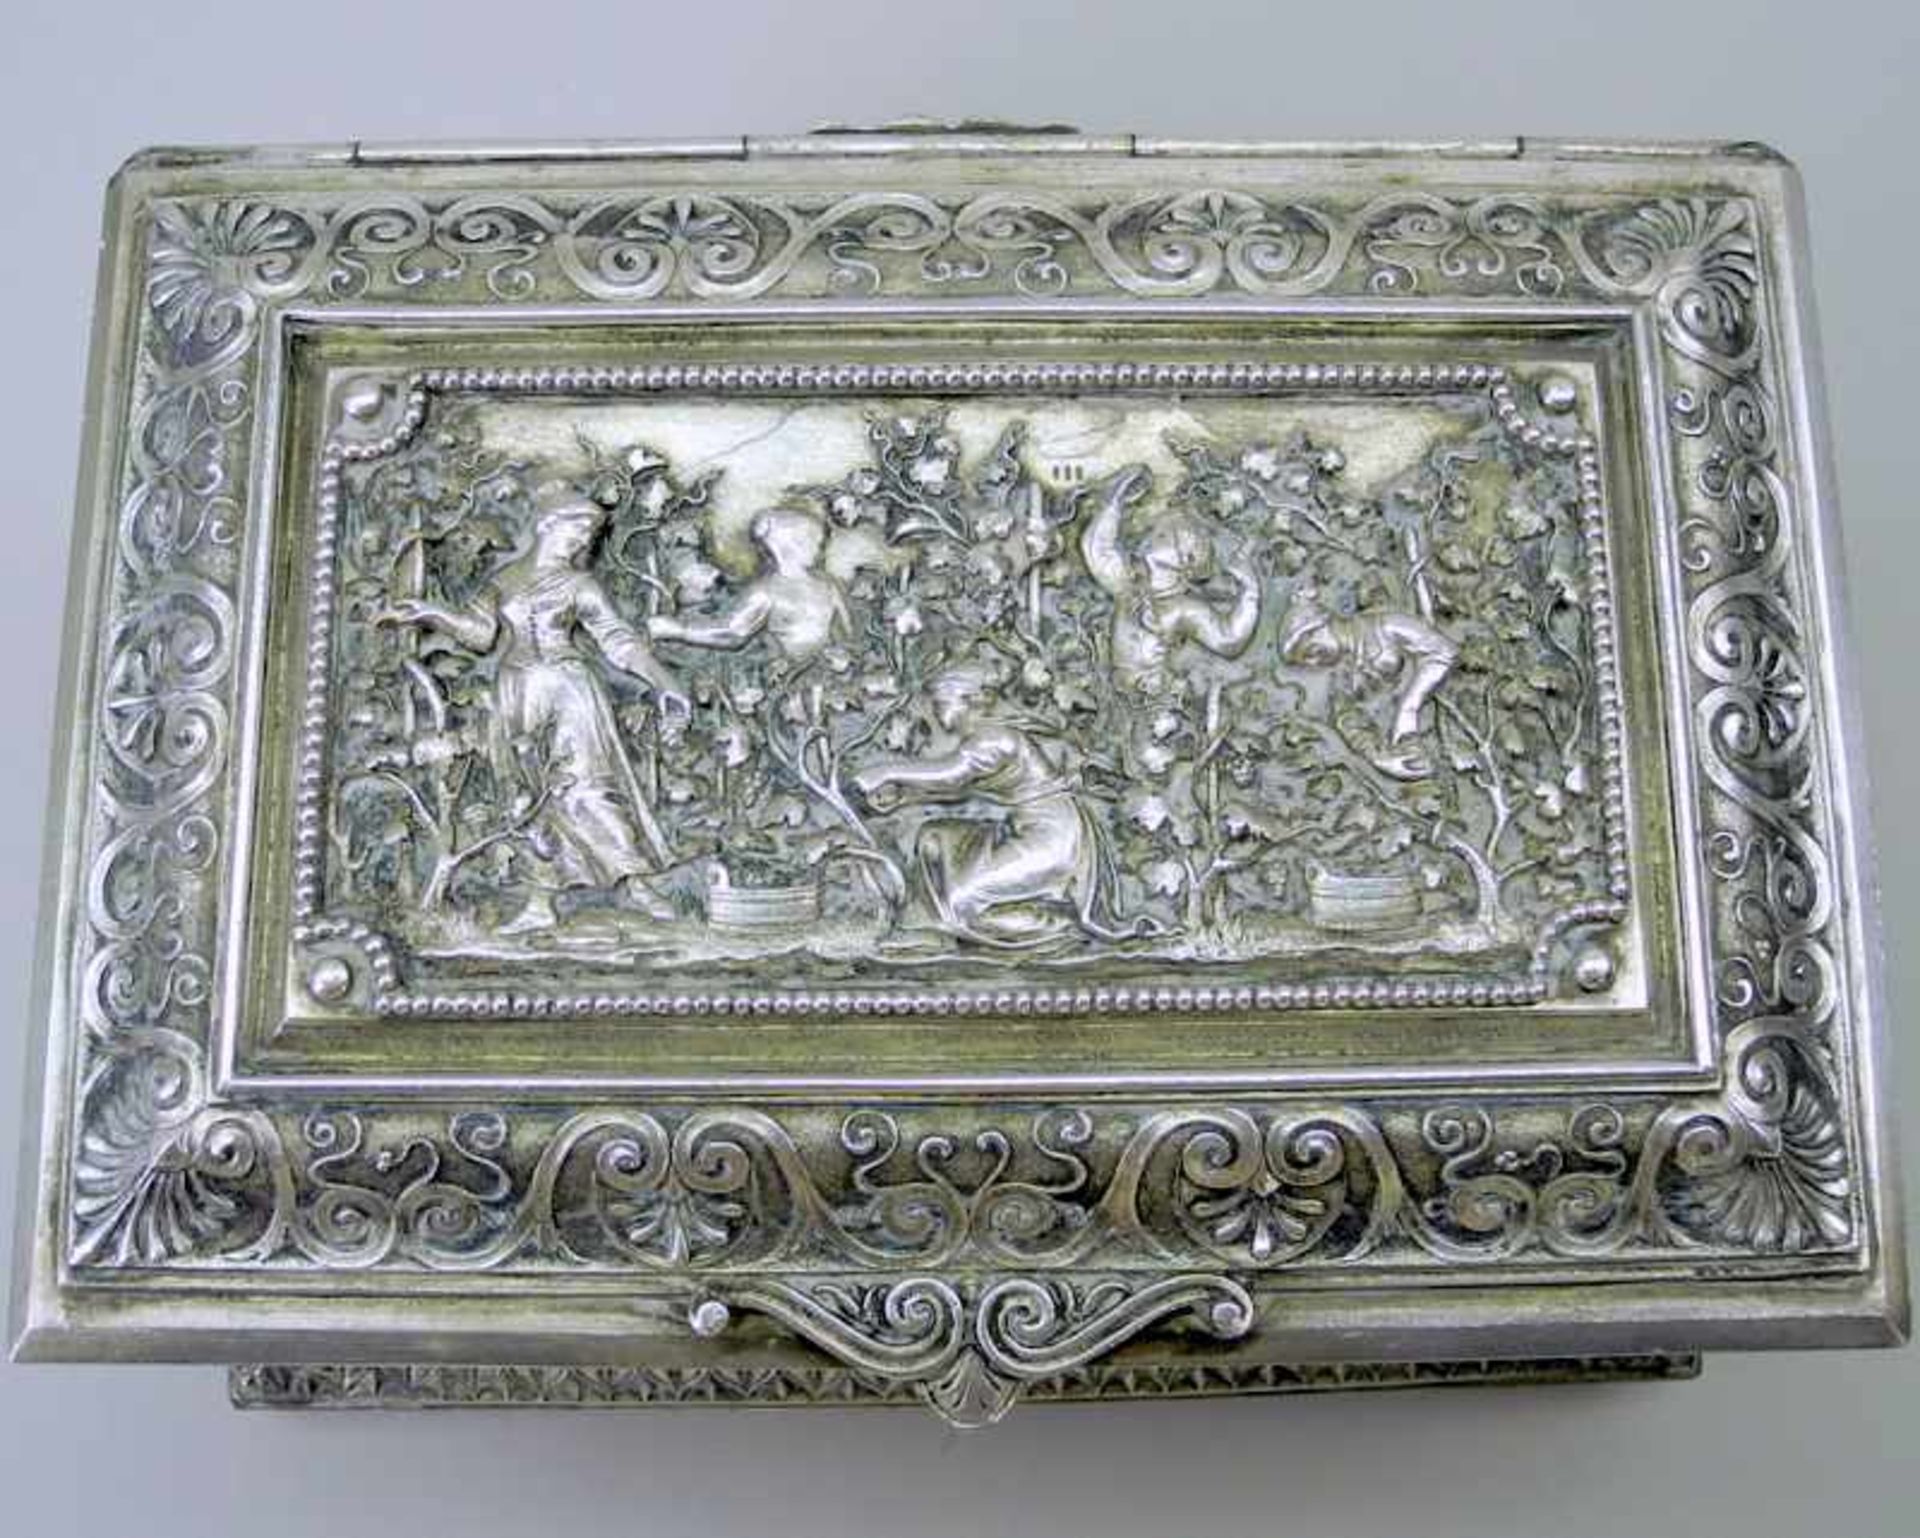 Aufwendig verzierte SchmuckschatulleZinn, Silber plated. Umlaufende Rocaille- und Akanthus- - Bild 3 aus 5